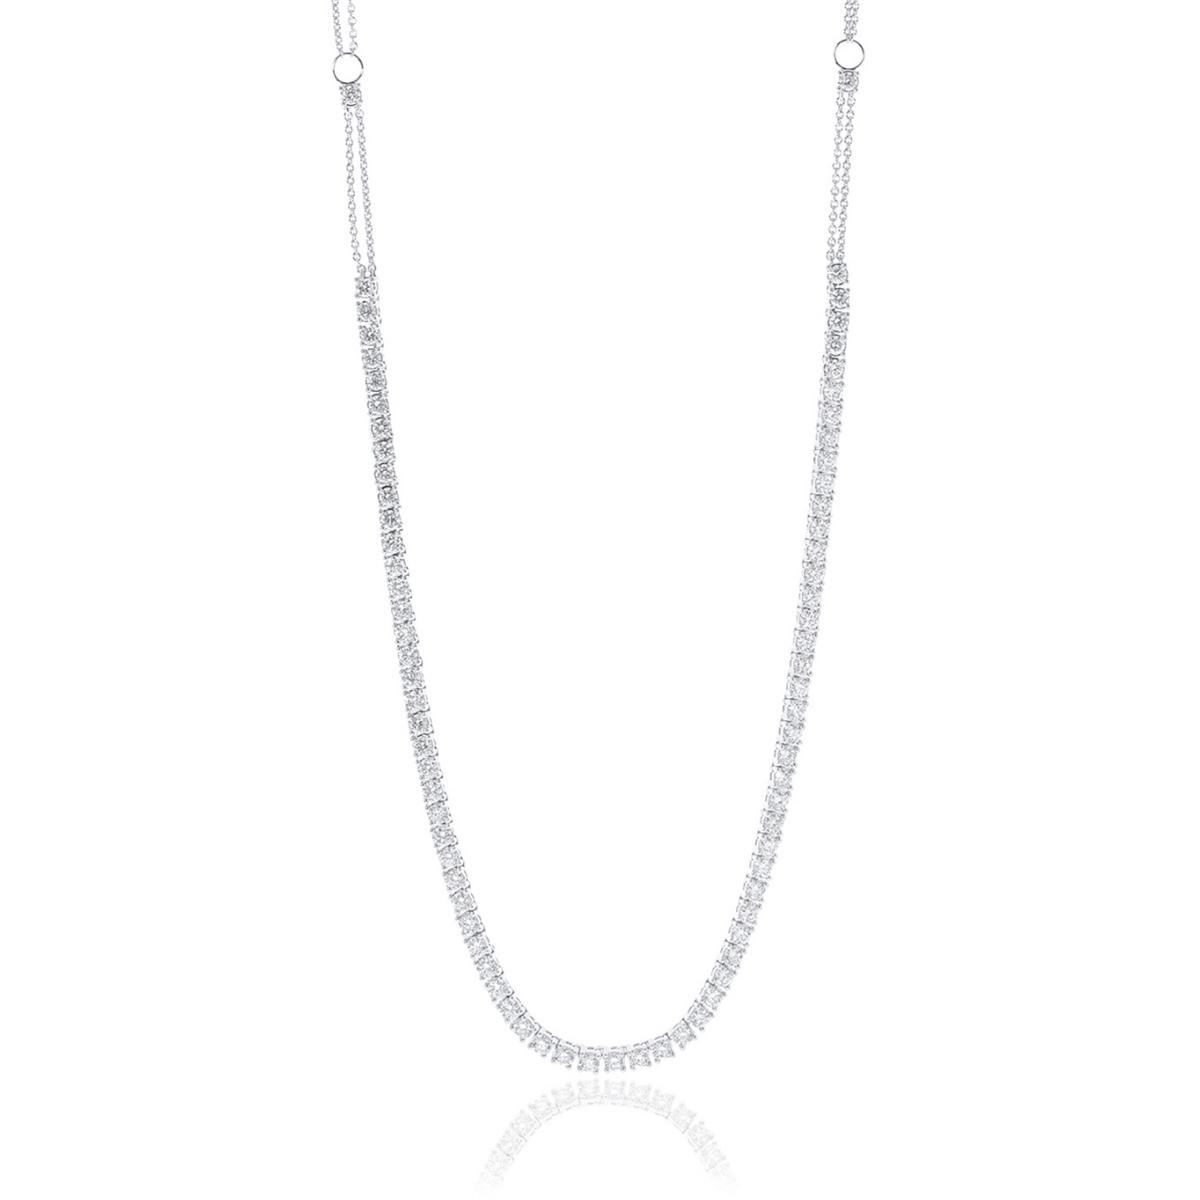 RIVIERA Diamond tennis necklace 5.5ct